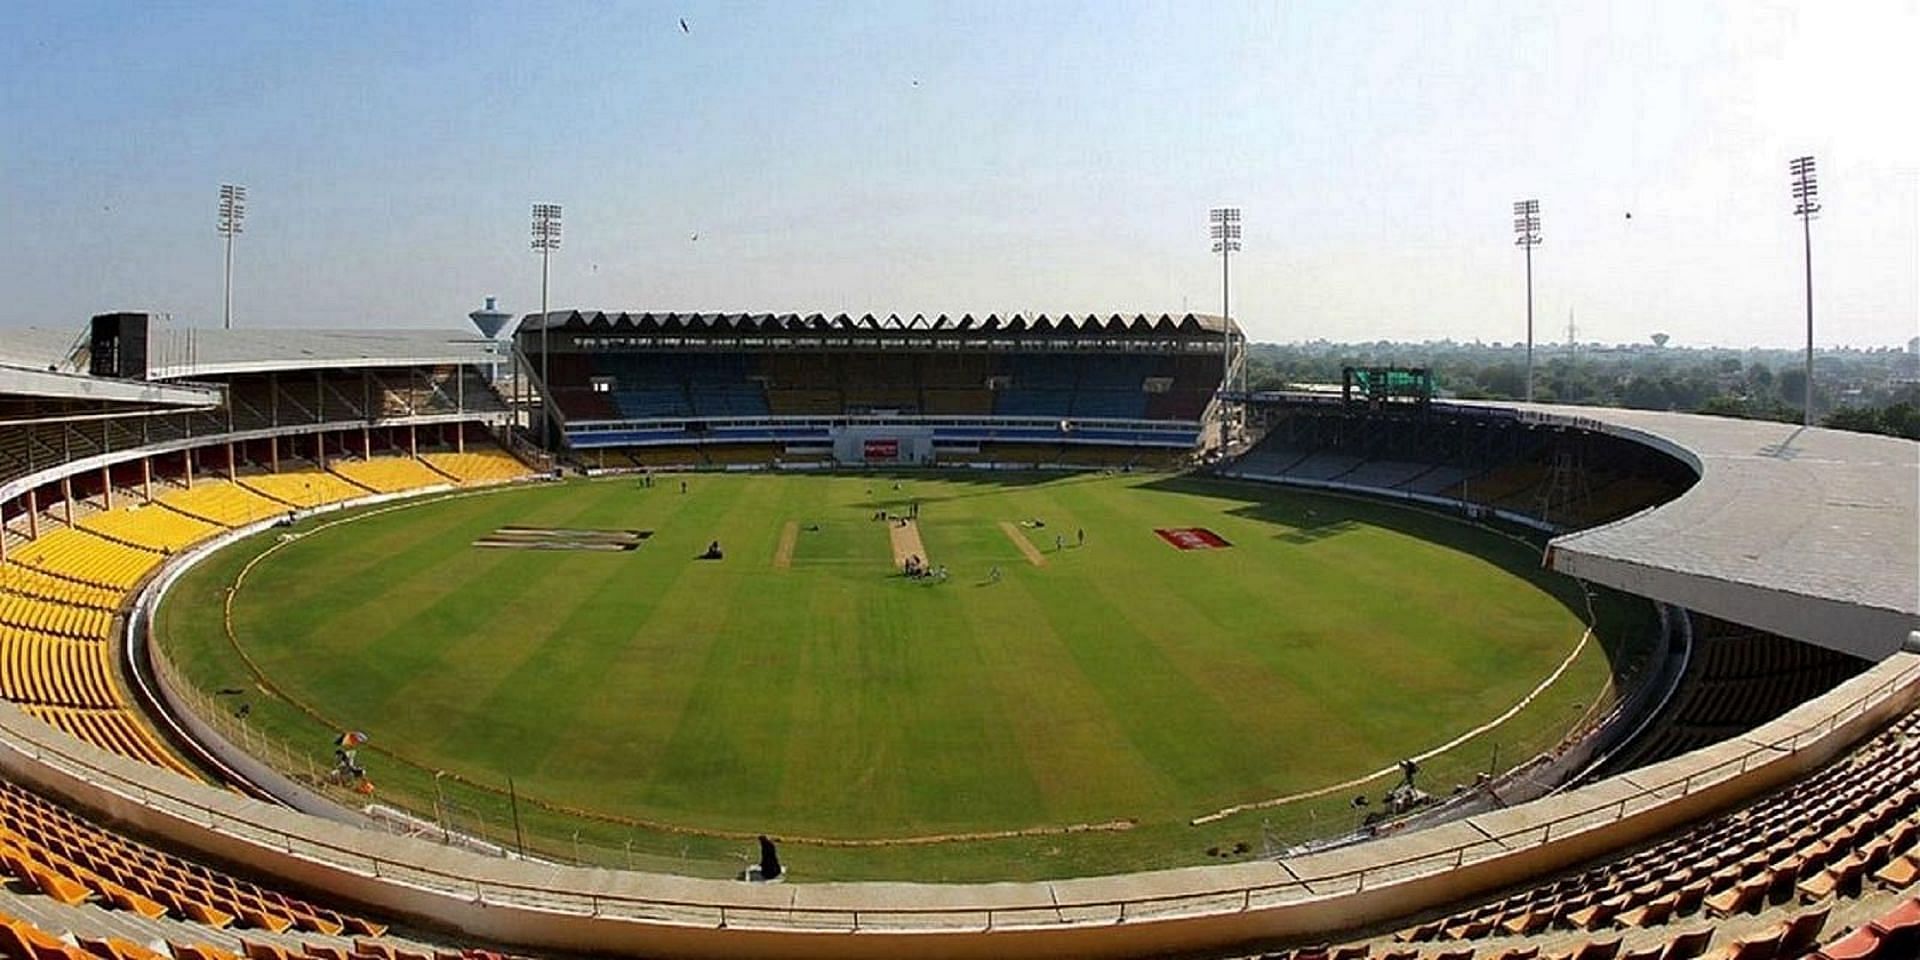             Sulabiya Cricket Ground                                                                                                 